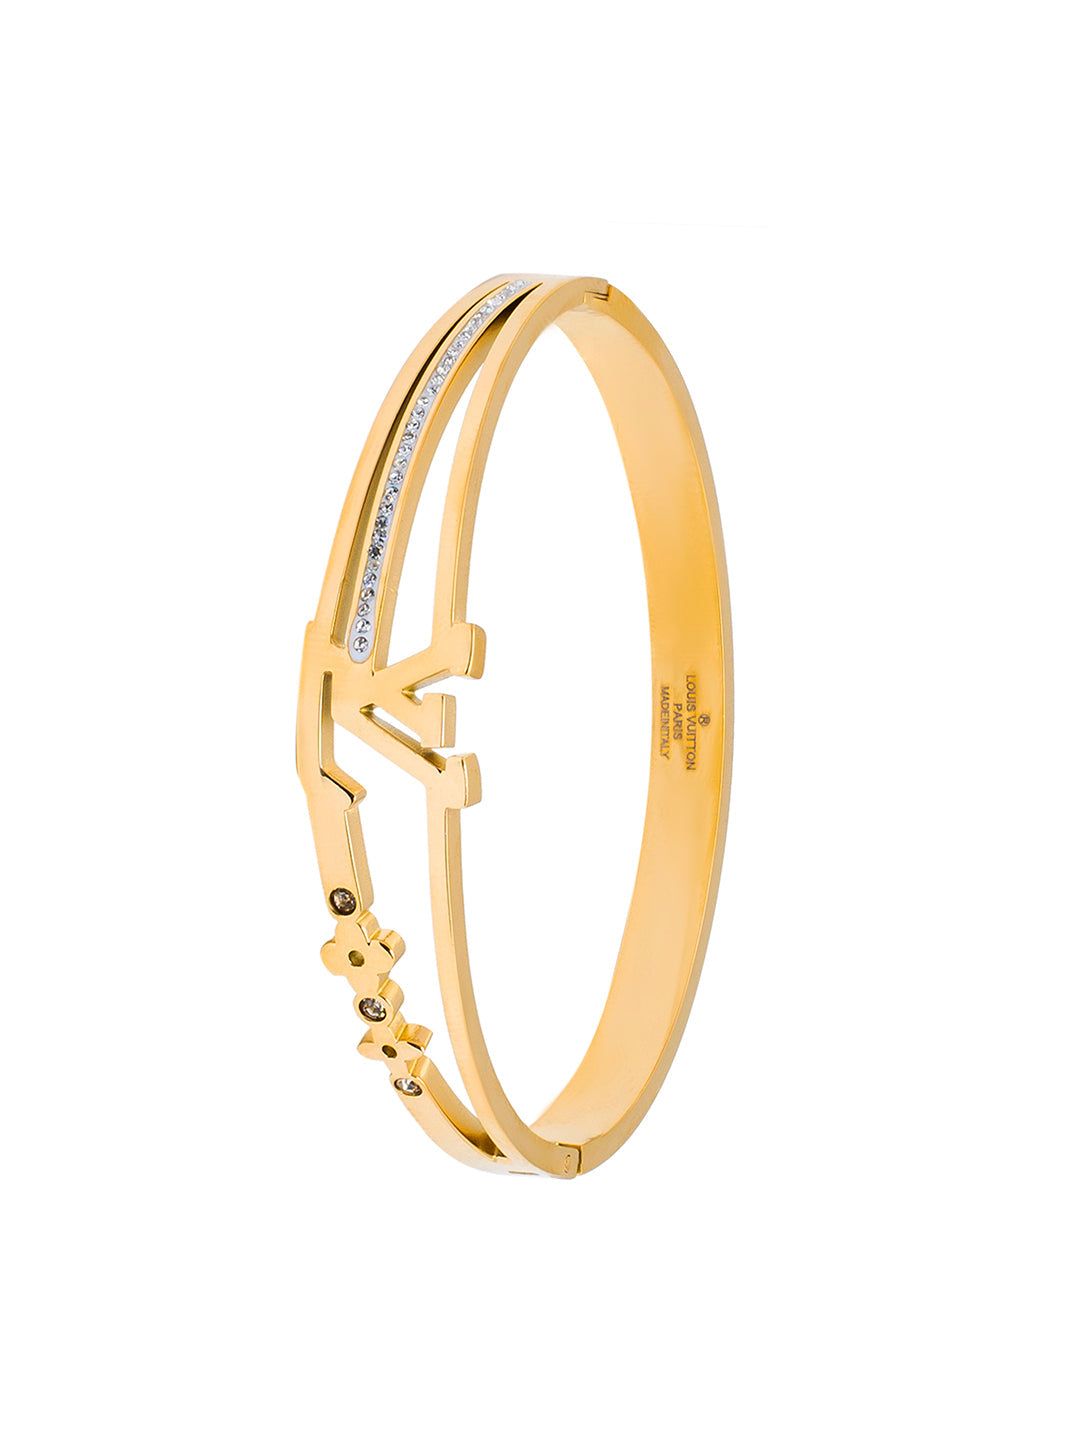 Louis Vuitton - Empreinte Bangle Yellow Gold - Gold - Unisex - Size: S - Luxury